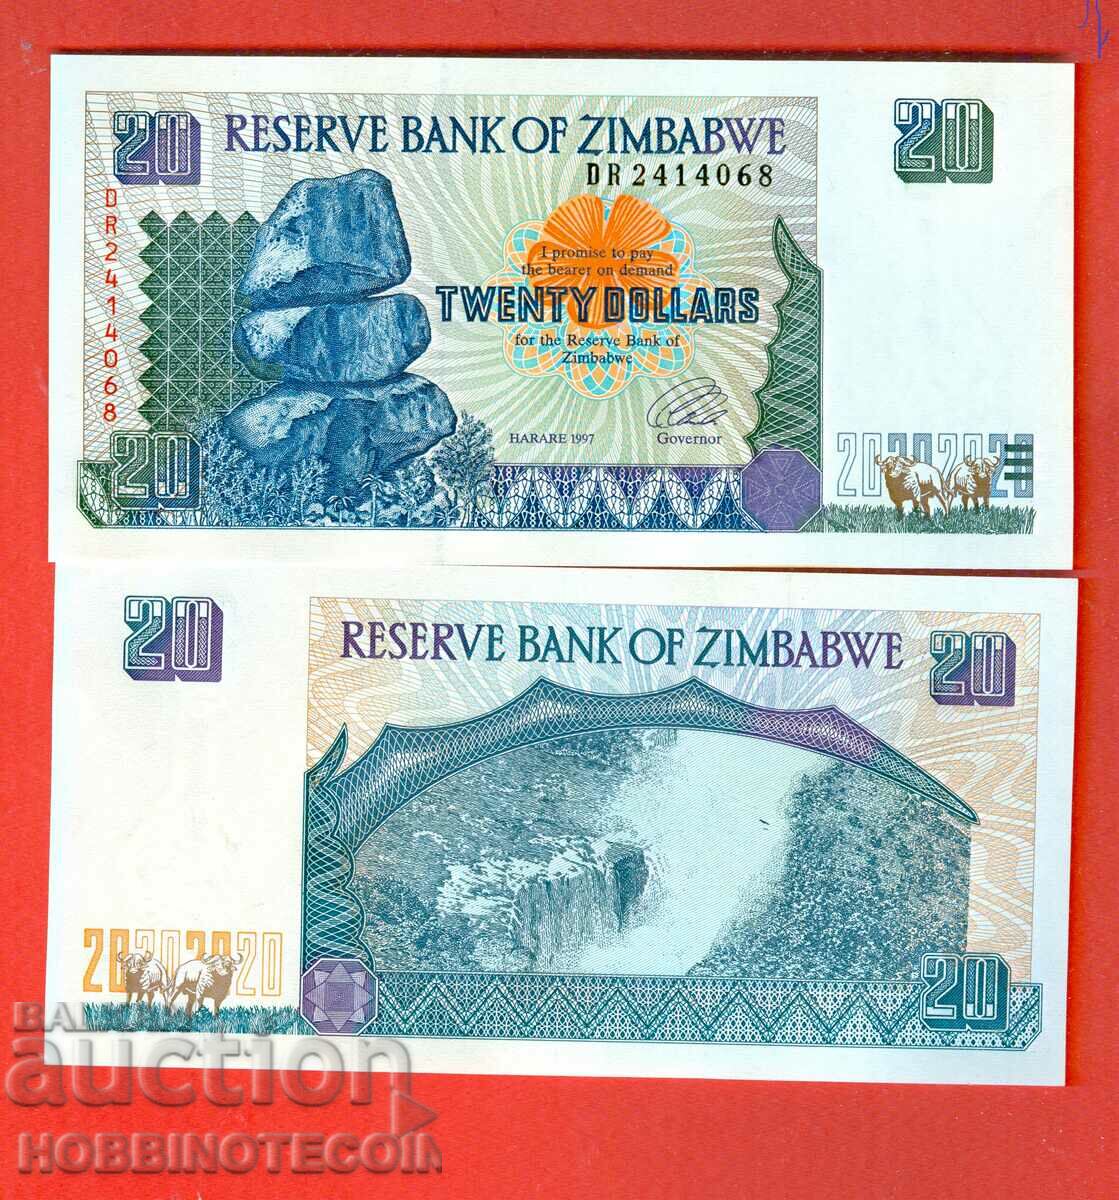 ZIMBABWE ZIMBABWE emisiune de 20 USD - emisiune 1997 NOU UNC